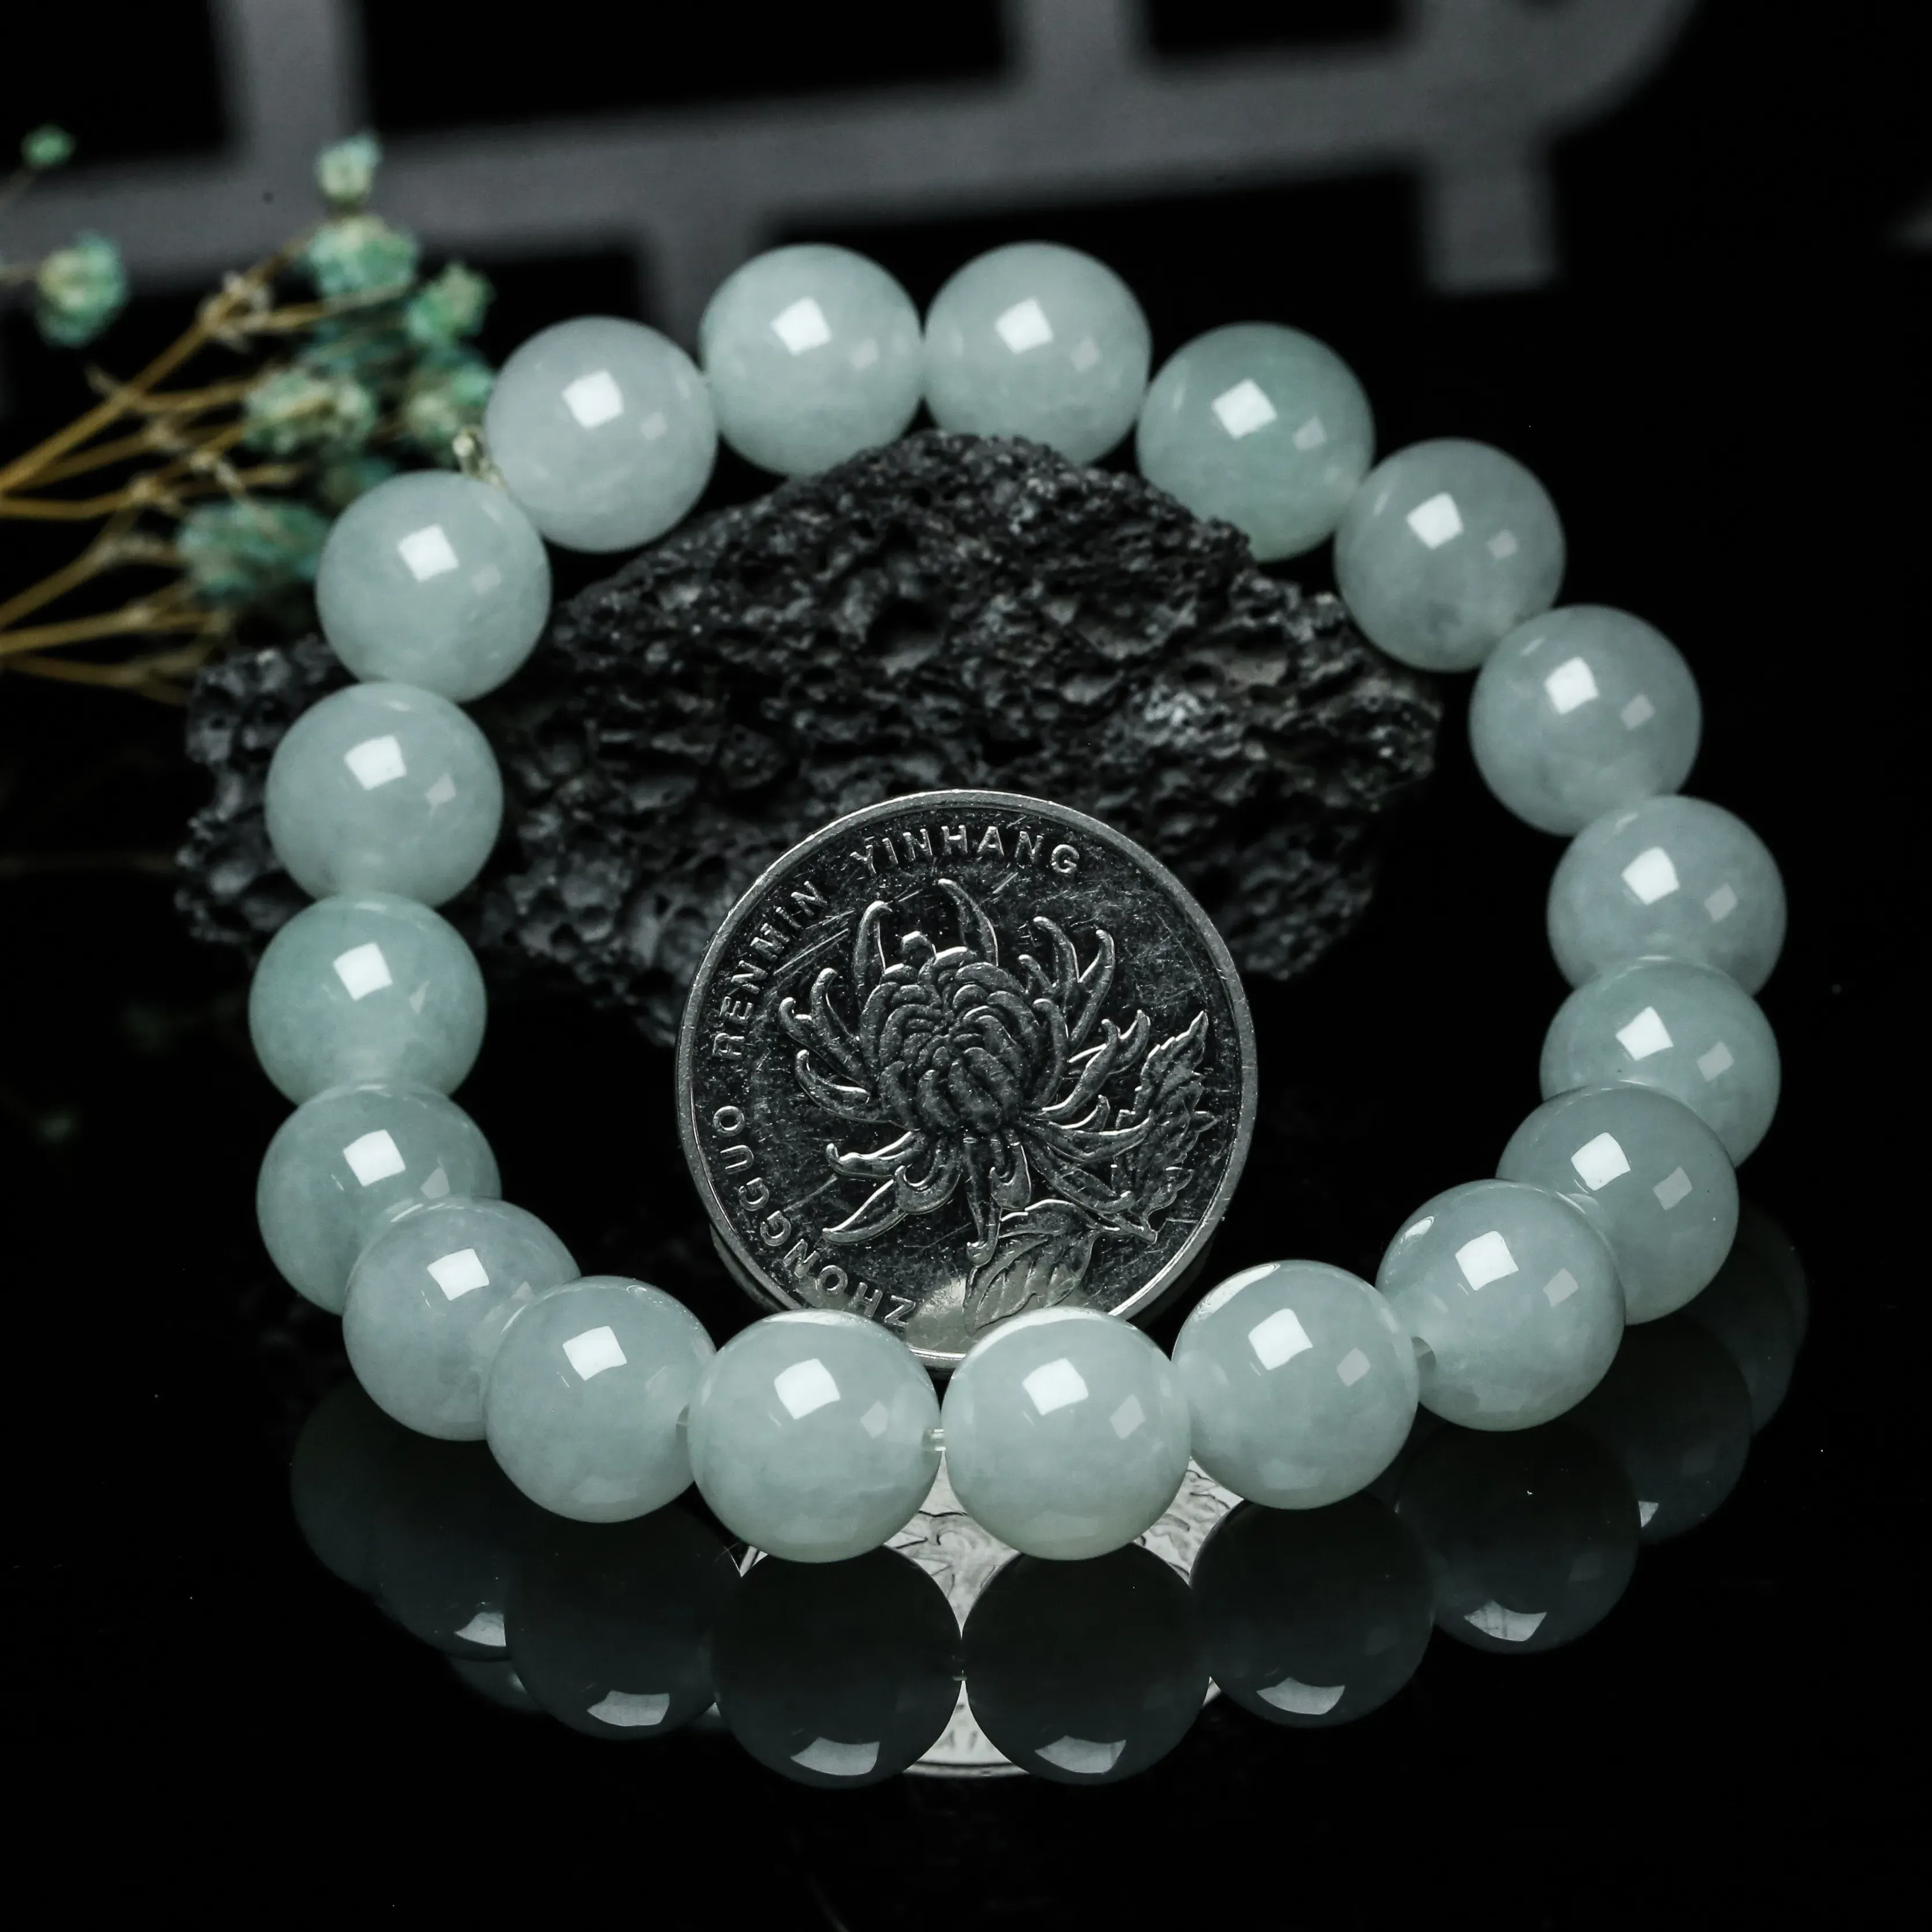 翡翠圆珠手串，共19颗珠子，取其中一颗珠尺寸大约10.5mm，清秀高雅，饱满水润，上手佩戴优雅大方